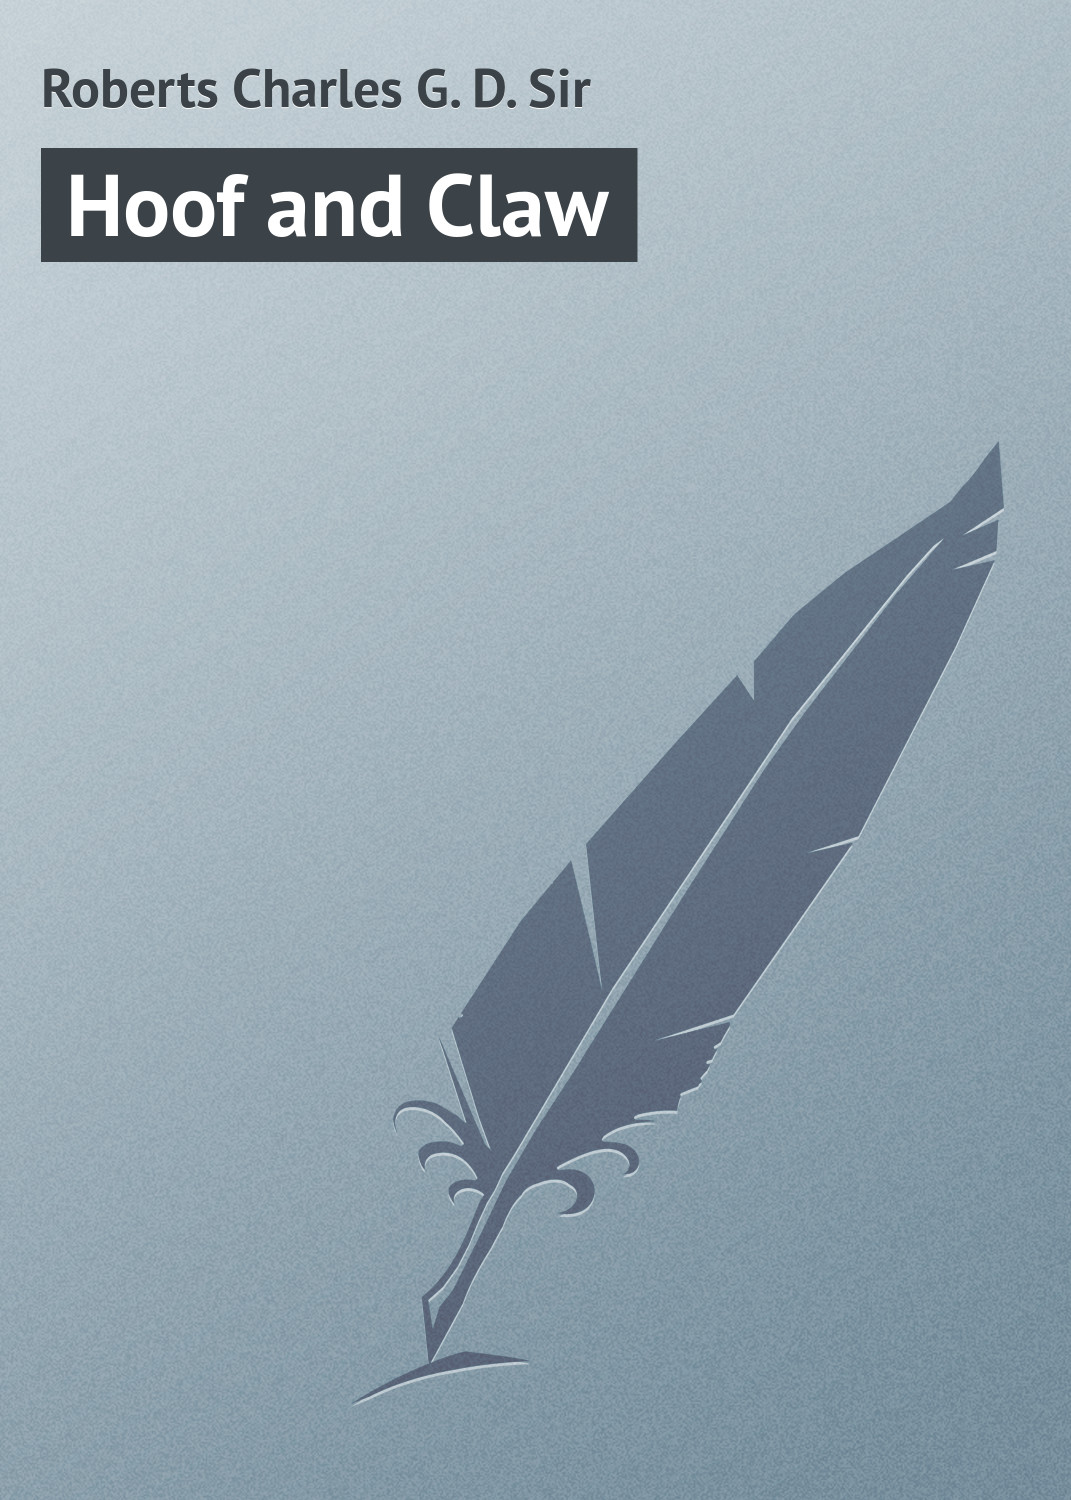 Книга Hoof and Claw из серии , созданная Charles Roberts, может относится к жанру Иностранные языки, Зарубежная классика. Стоимость электронной книги Hoof and Claw с идентификатором 23171851 составляет 5.99 руб.